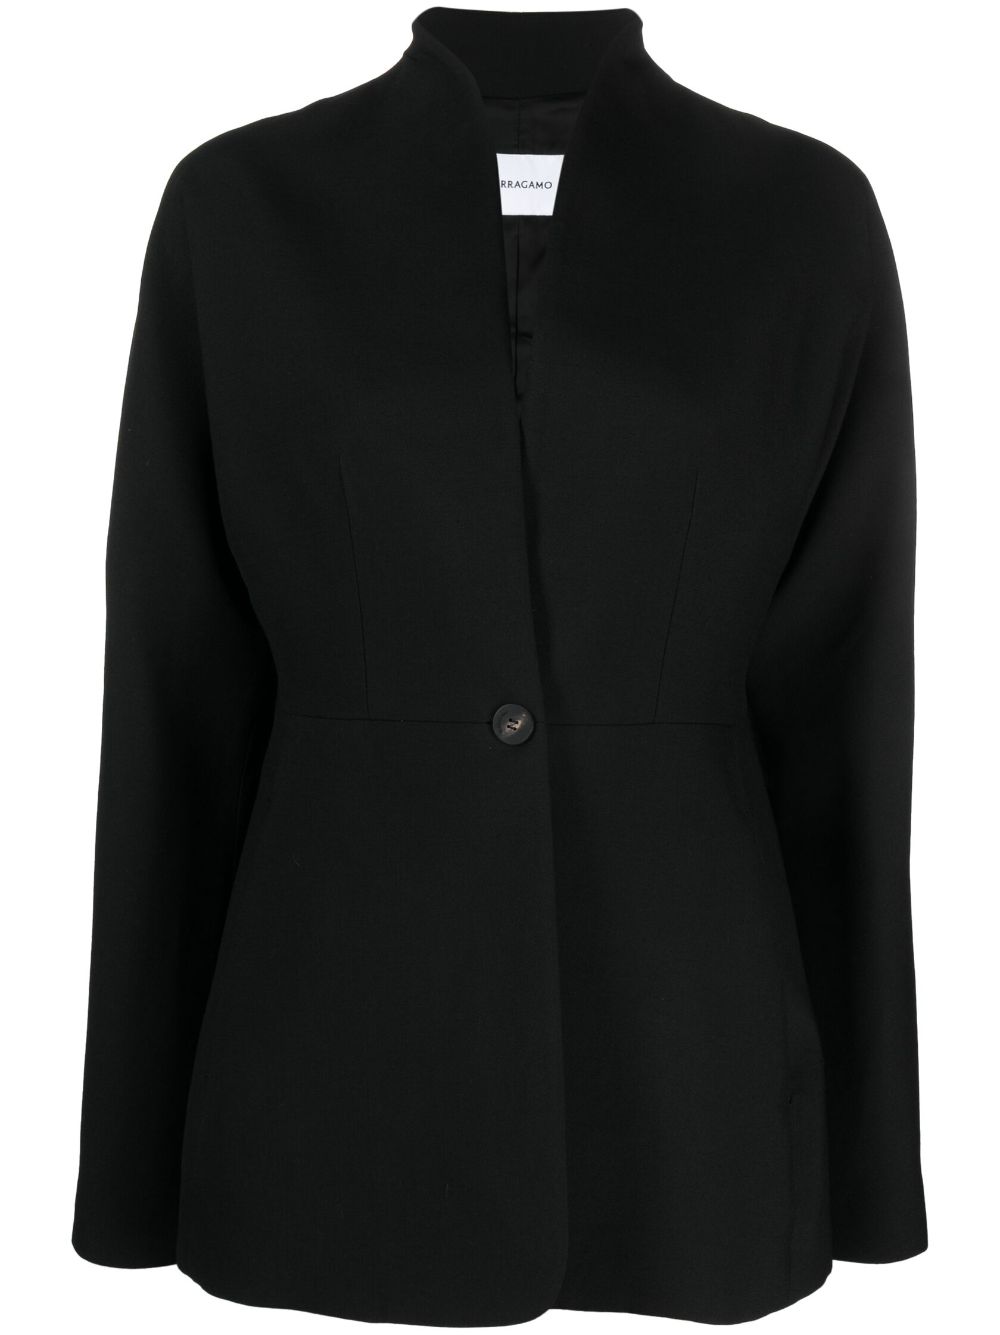 シンプルな黒のシングルブレスト レディース スーツジャケット